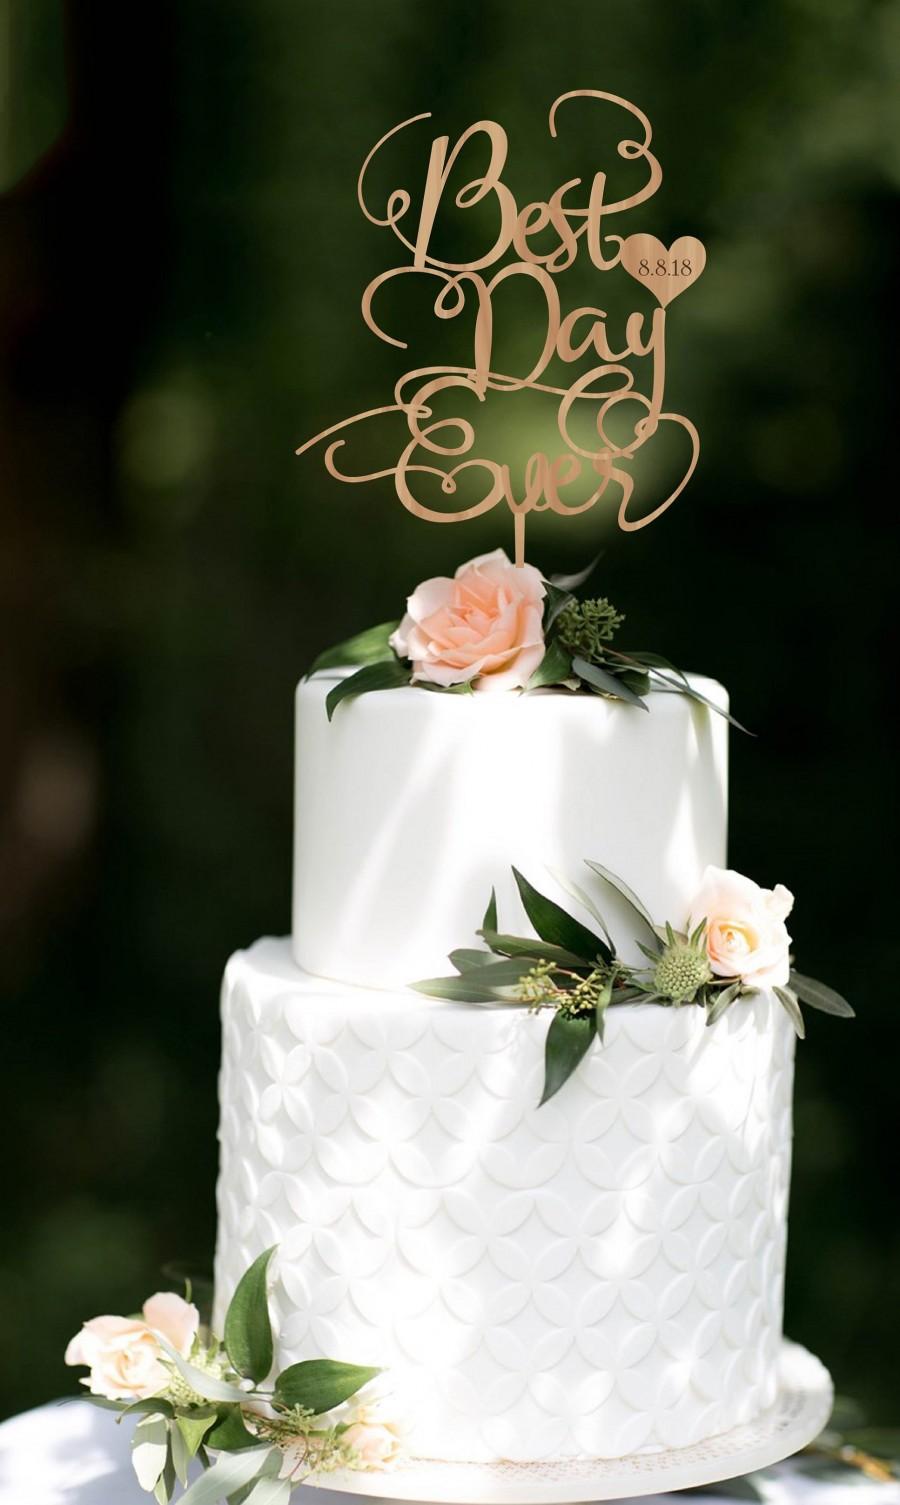 زفاف - Wedding Cake Topper Best Day Ever Personalized Wood Cake Topper Golden Silver  Cake Topper Customized Wedding Cake Topper